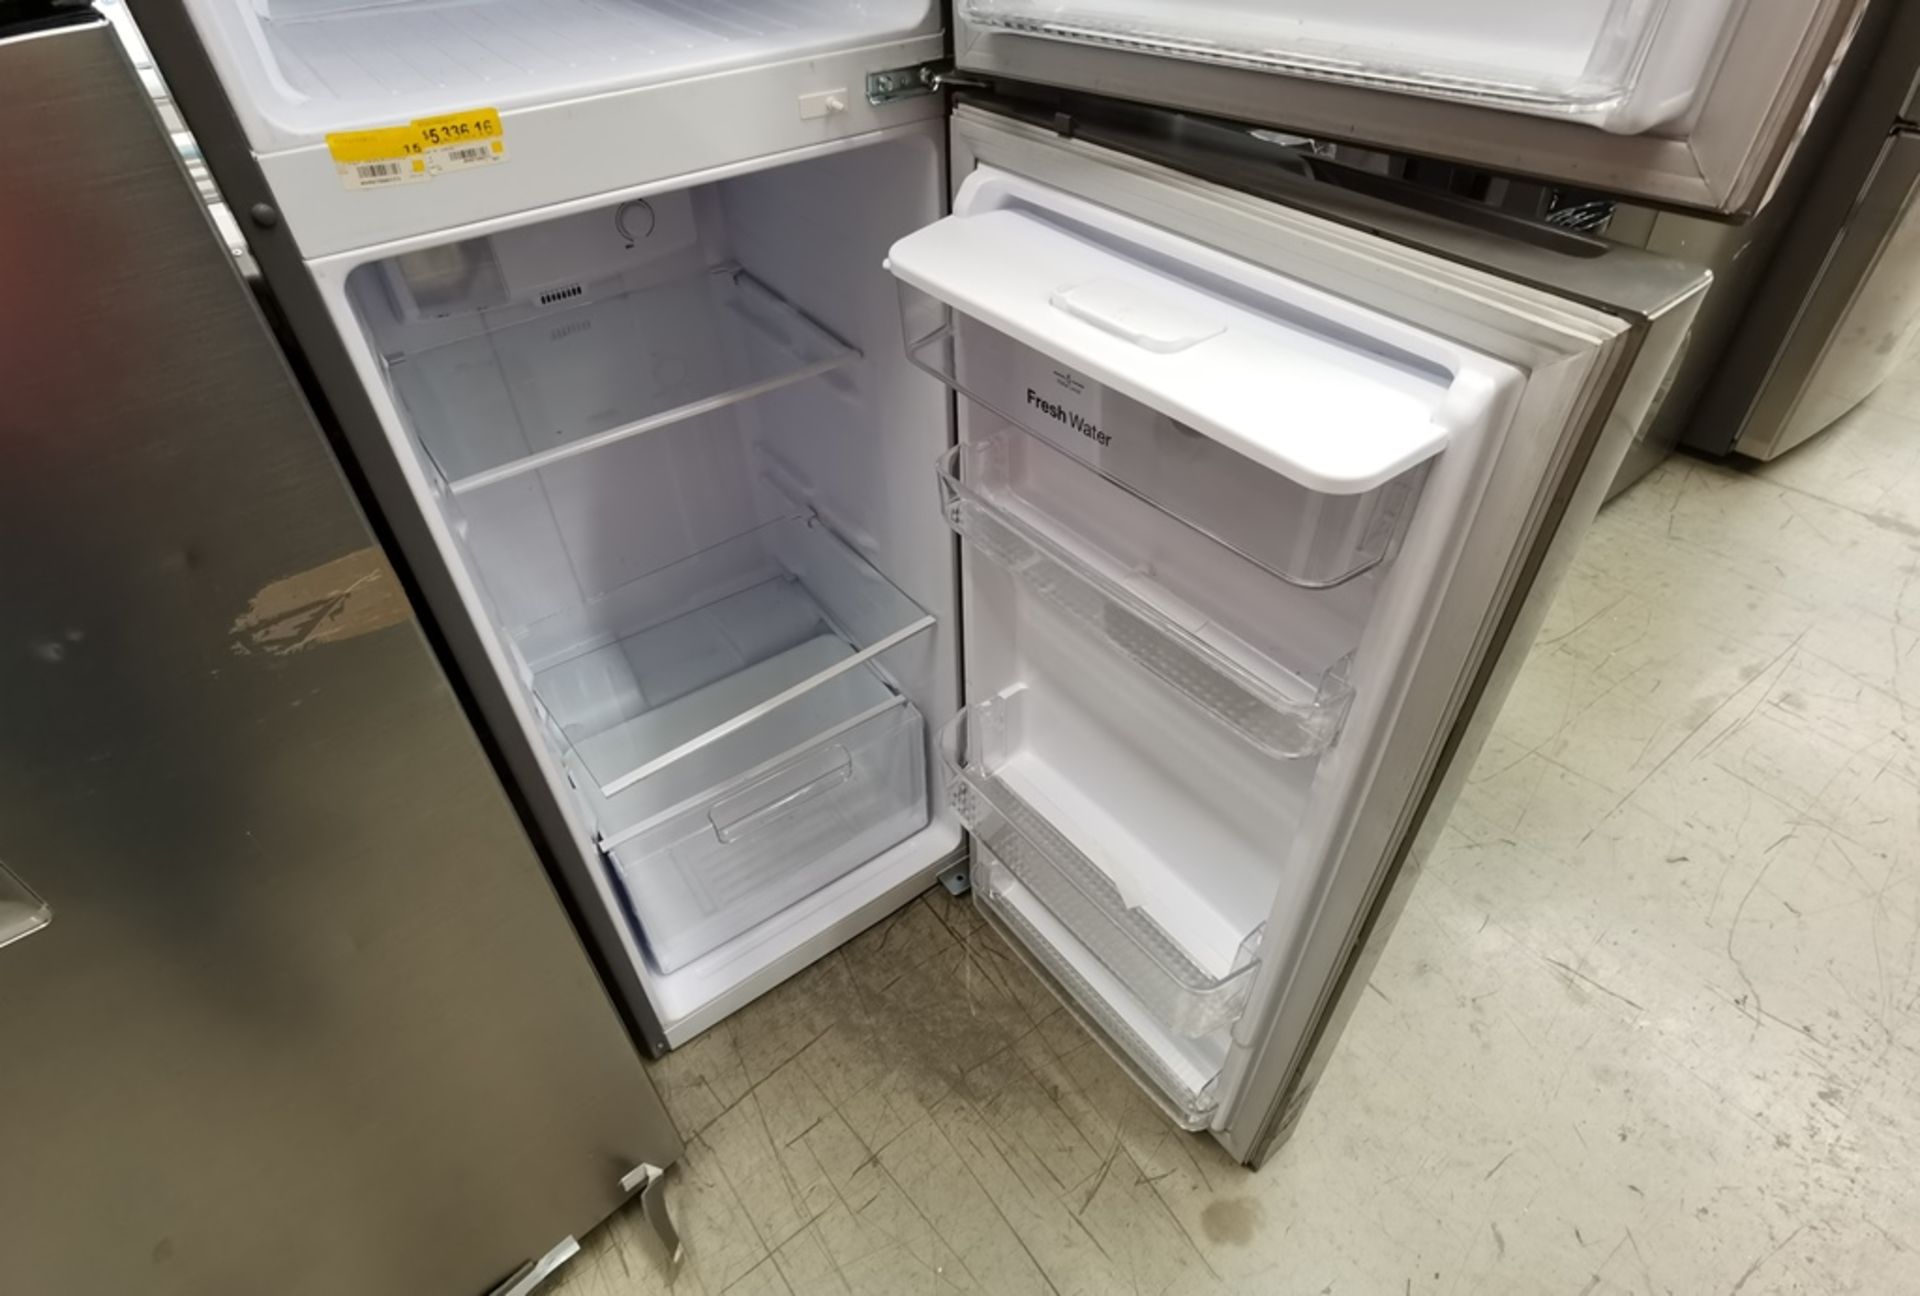 Lote De 2 Refrigeradores Contiene: 1 Refrigerador Marca Winia, Modelo DFR25210GMDX, Serie MR21yN118 - Image 8 of 19